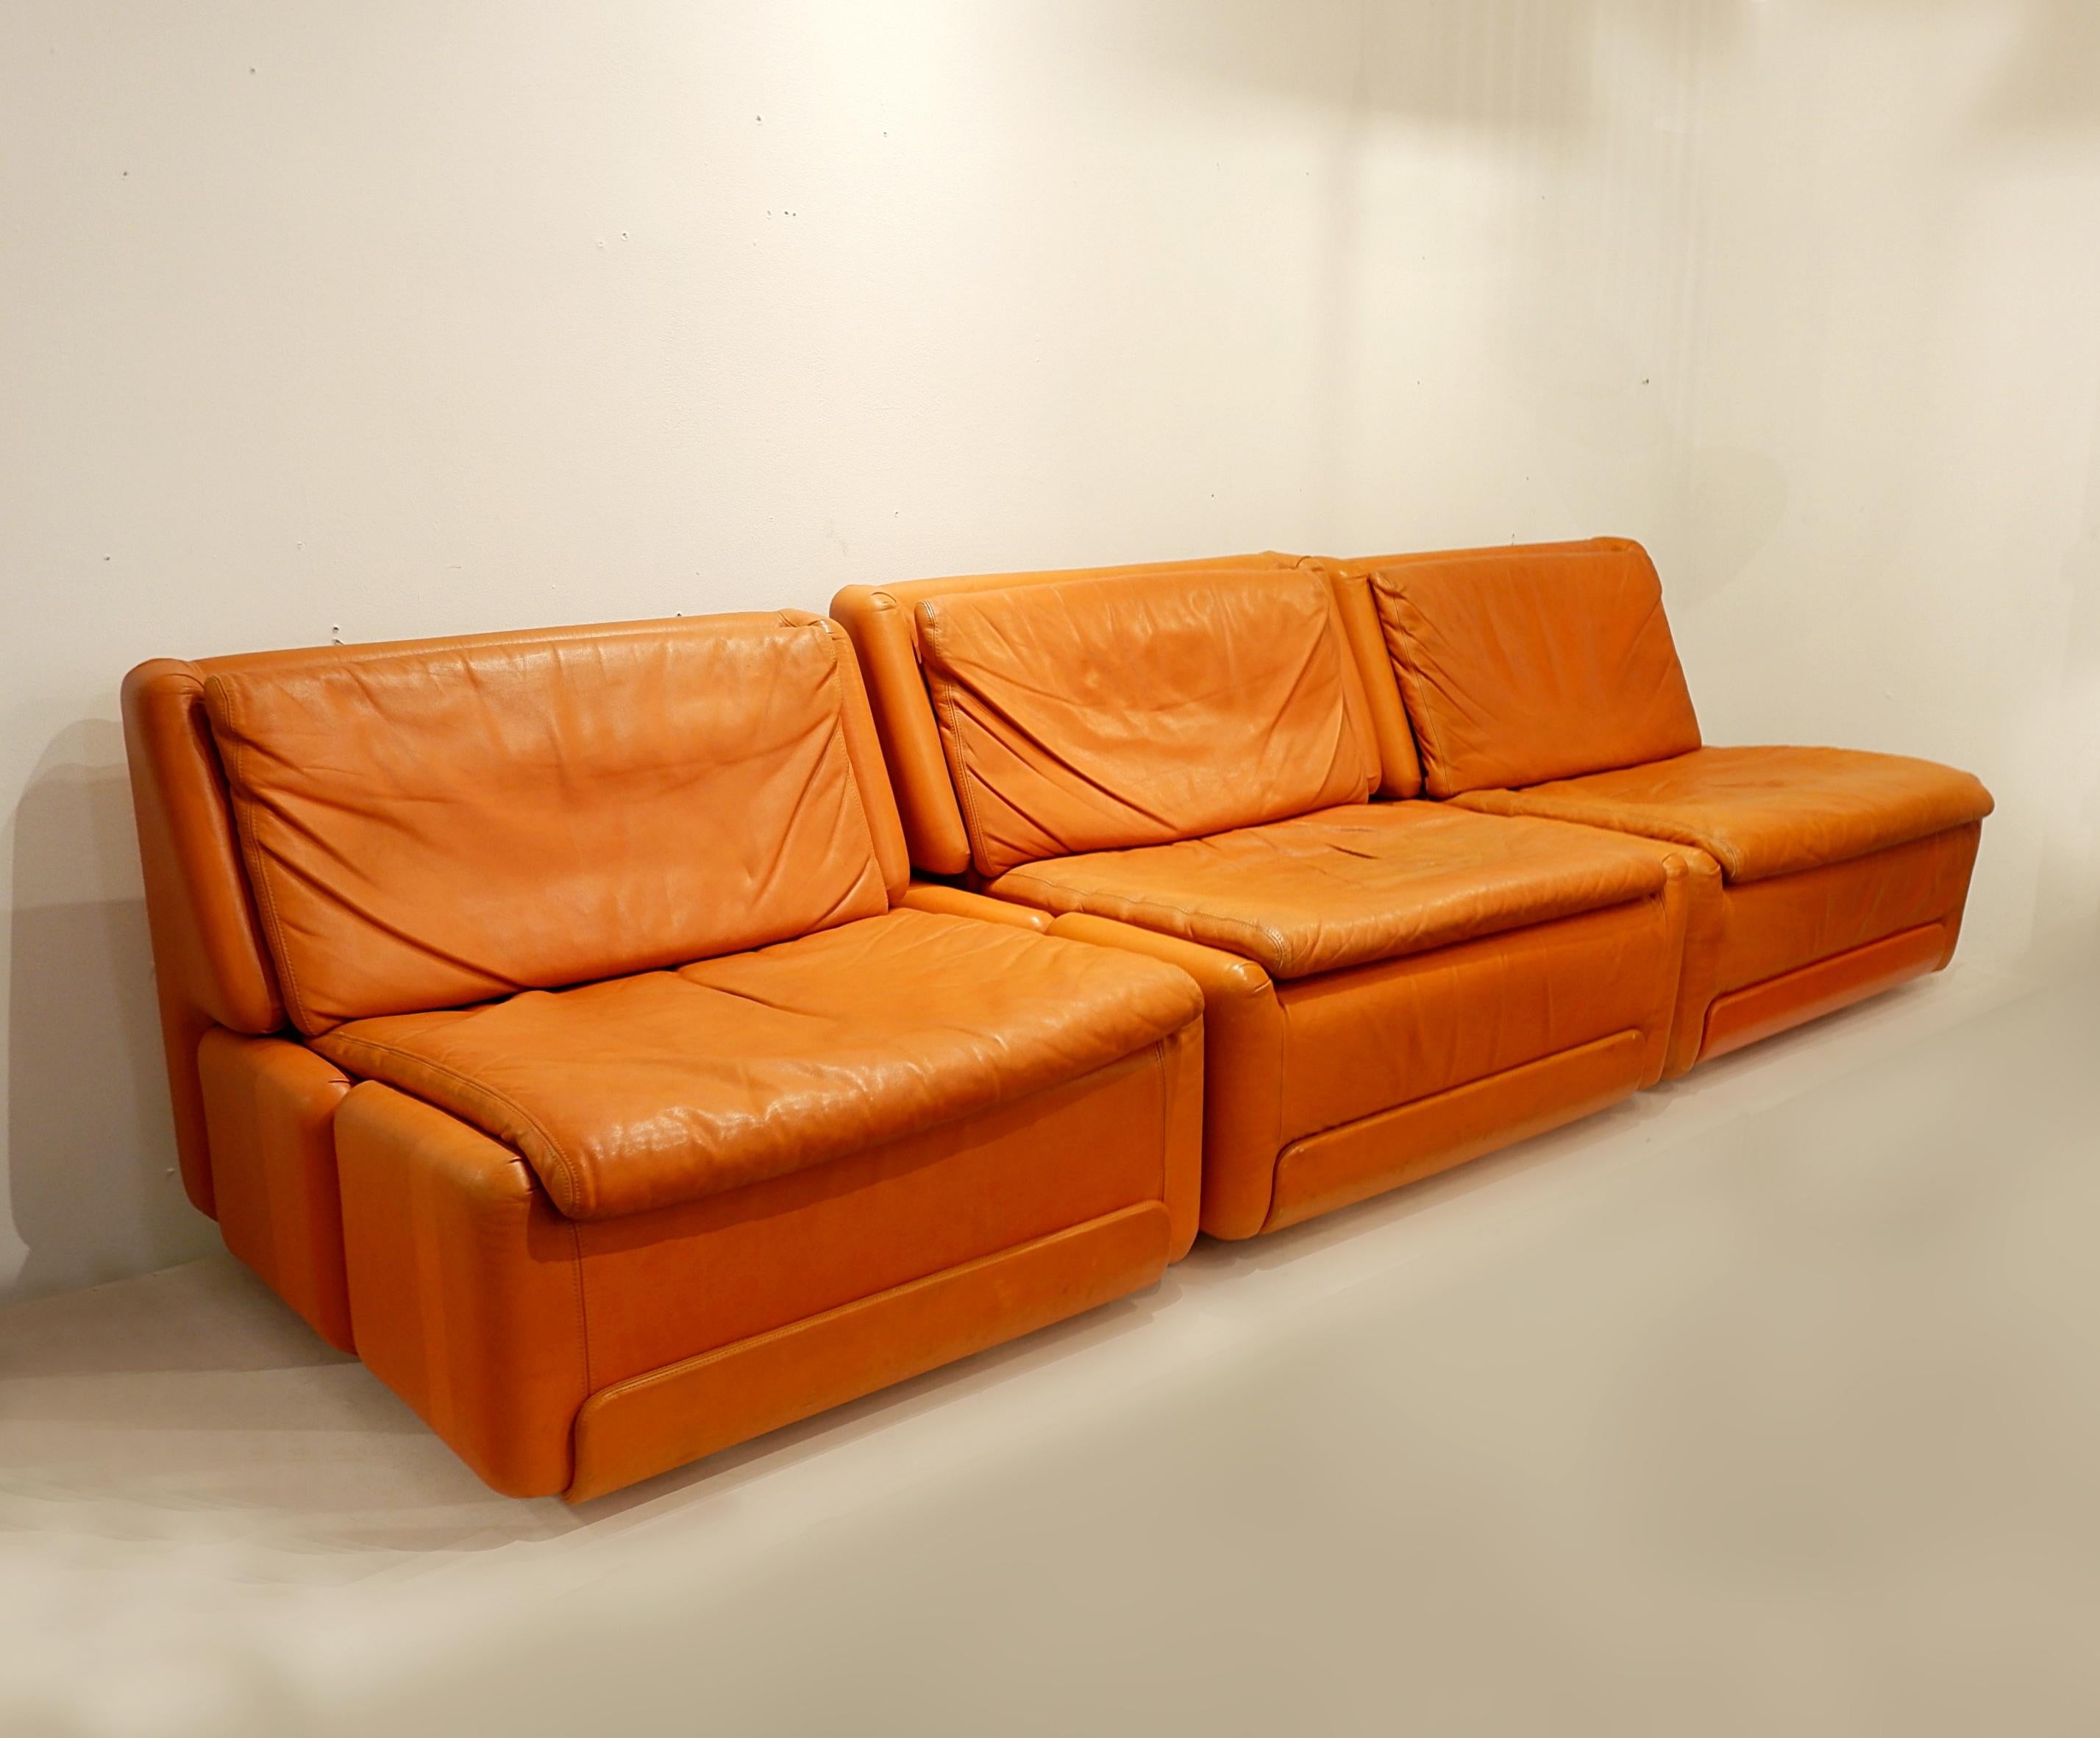 Fauteuils confortables et bien conçus en cuir orange. Ces fauteuils ont une patine agréable et une forme facile à adapter à la plupart des intérieurs. Ils peuvent apporter une touche de couleur ou compléter un espace déjà coloré. Il en existe cinq.